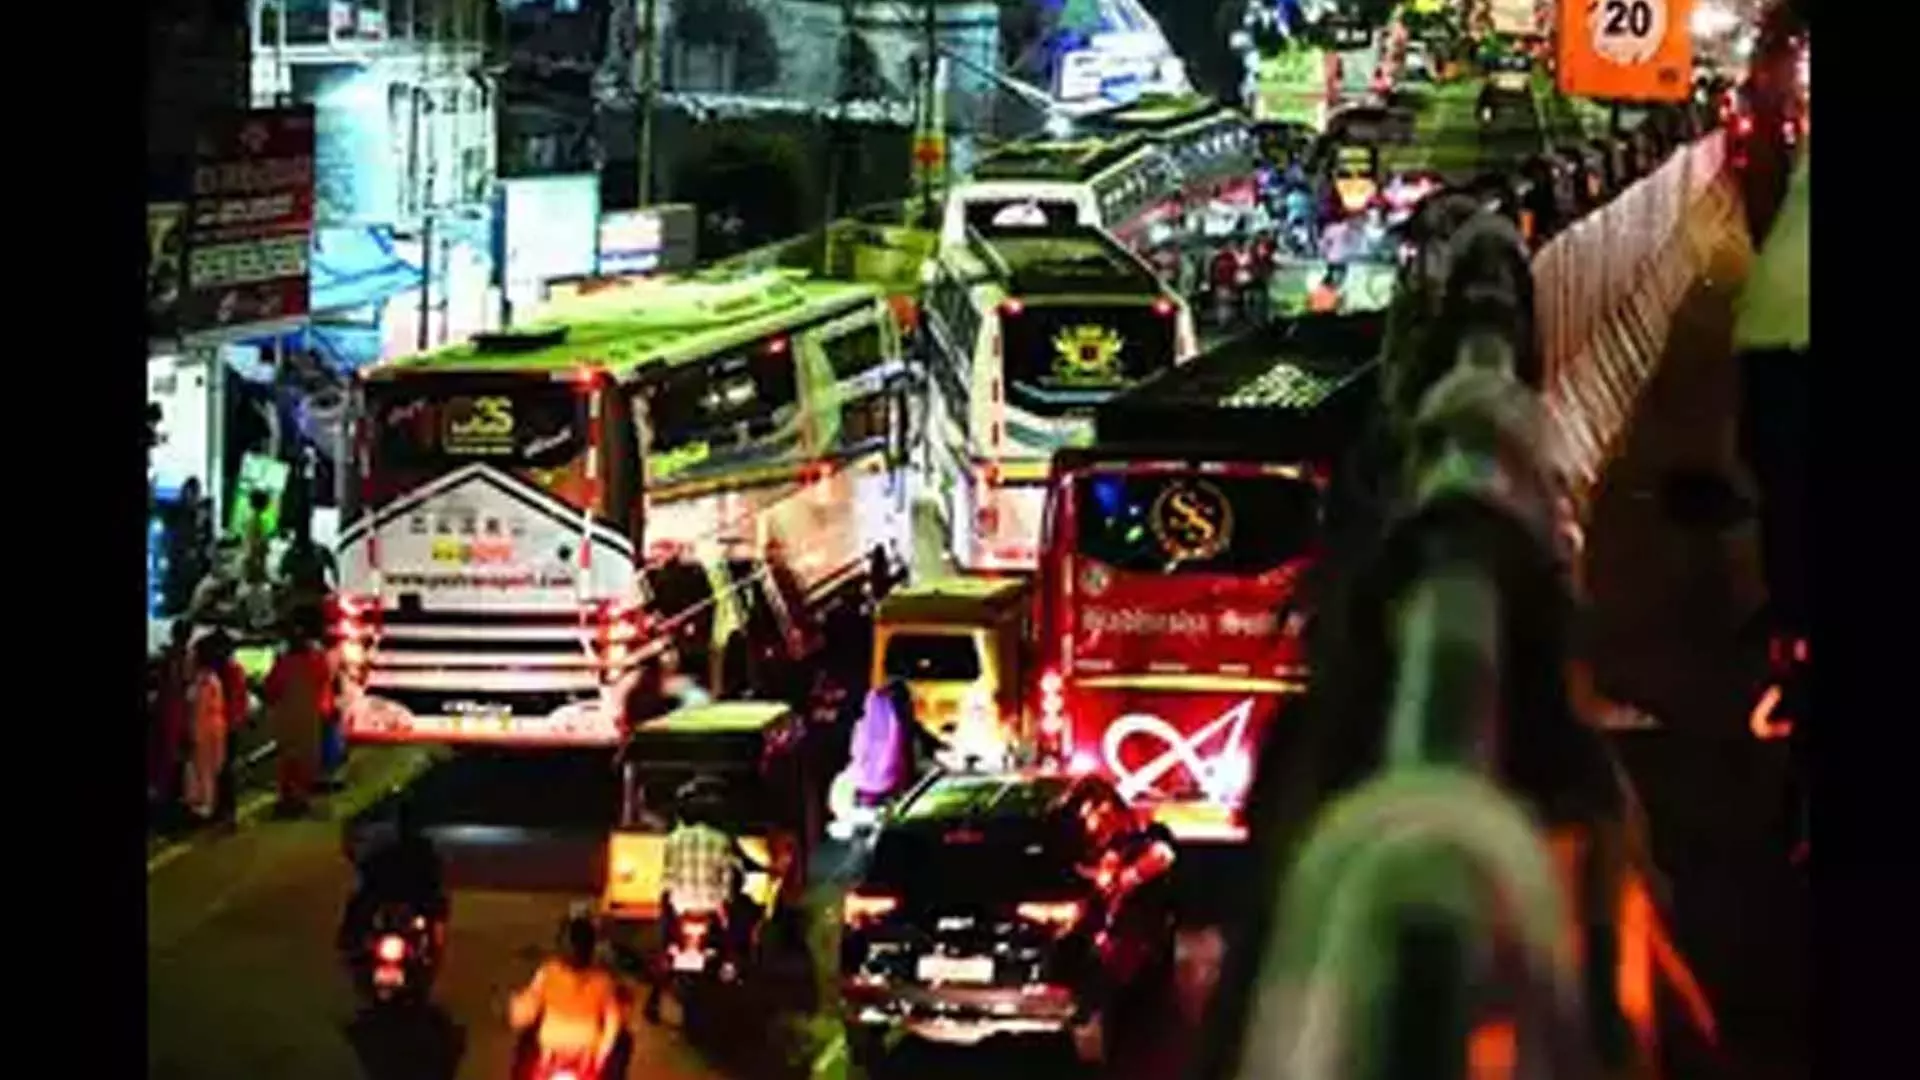 Chennai News: कोयम्बेडु में निजी बसों के अवैध रूप से पार्क होने से अराजकता का माहौल